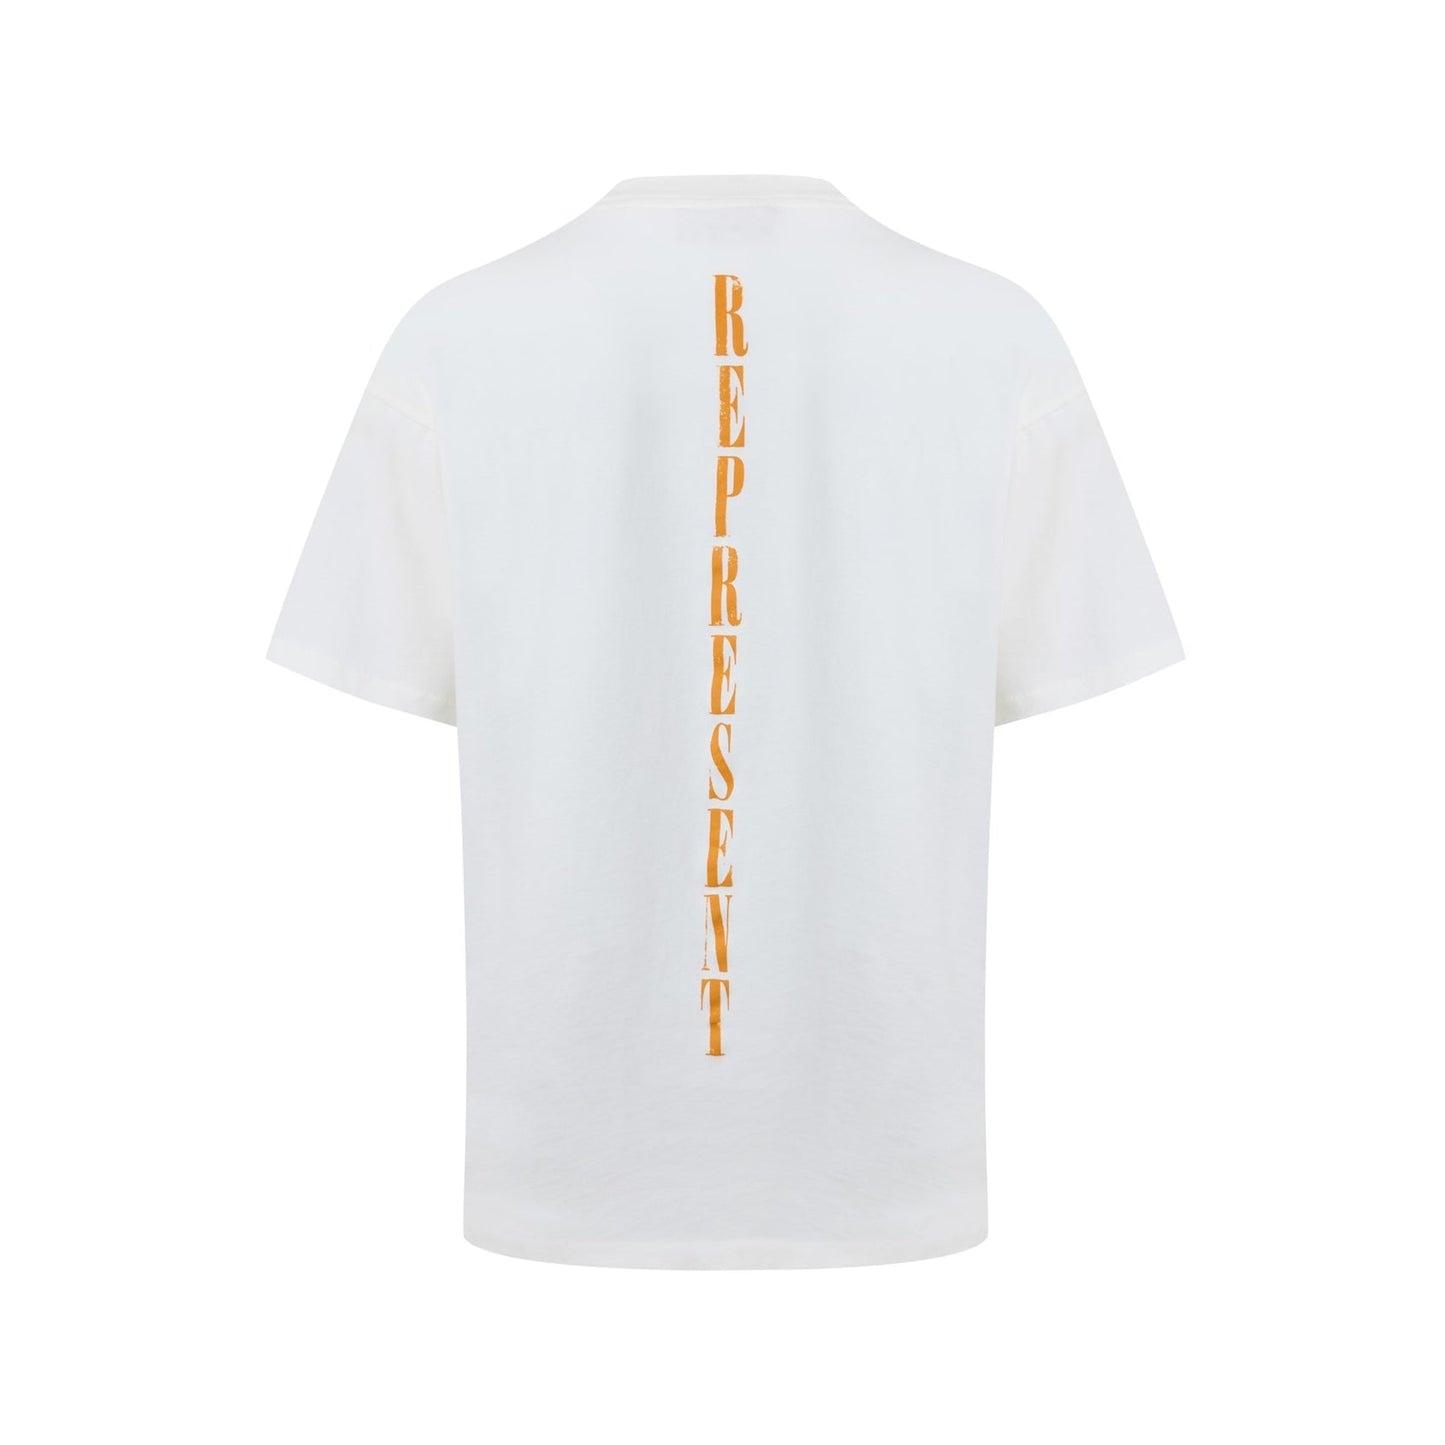 Represent Reborn T-Shirt - 72 Flat White - Escape Menswear